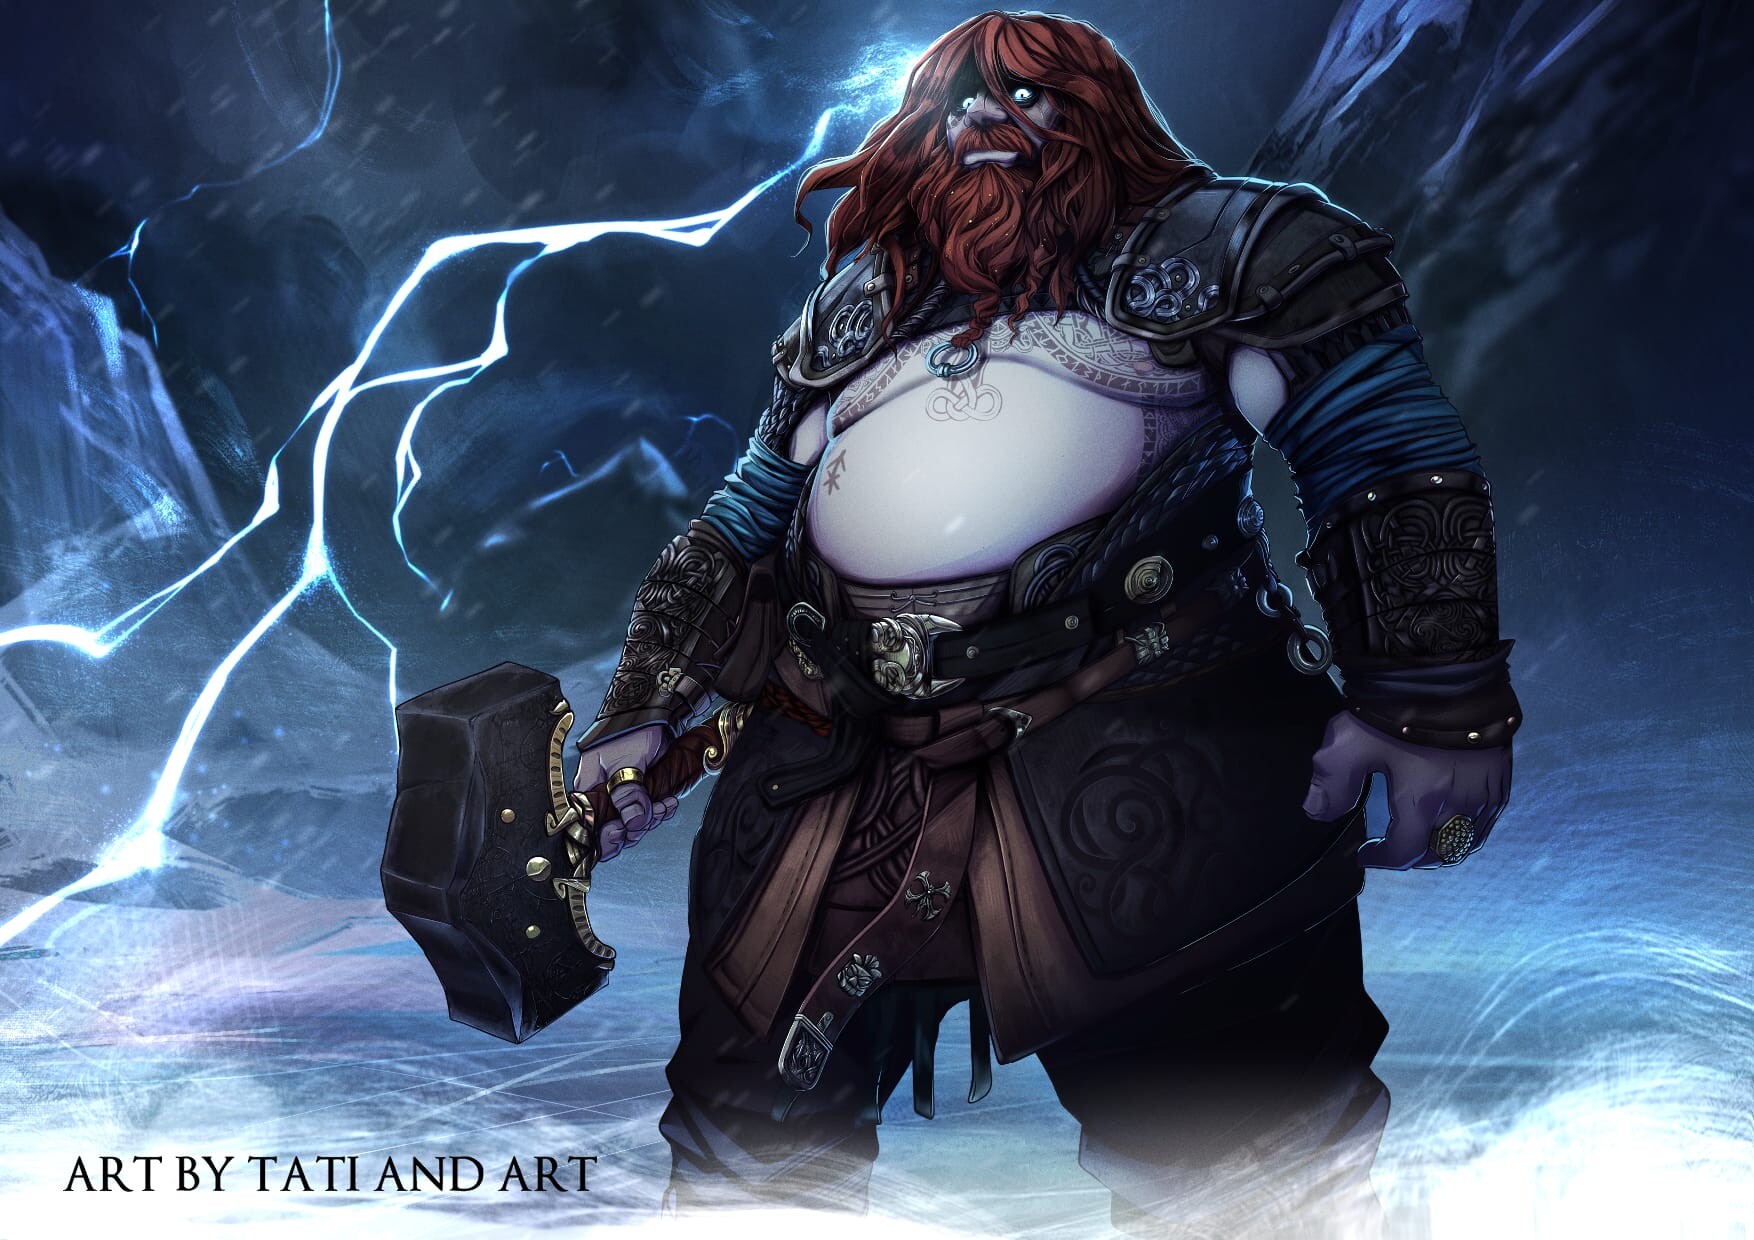 ArtStation - Thor - God of War Ragnarok Fanart